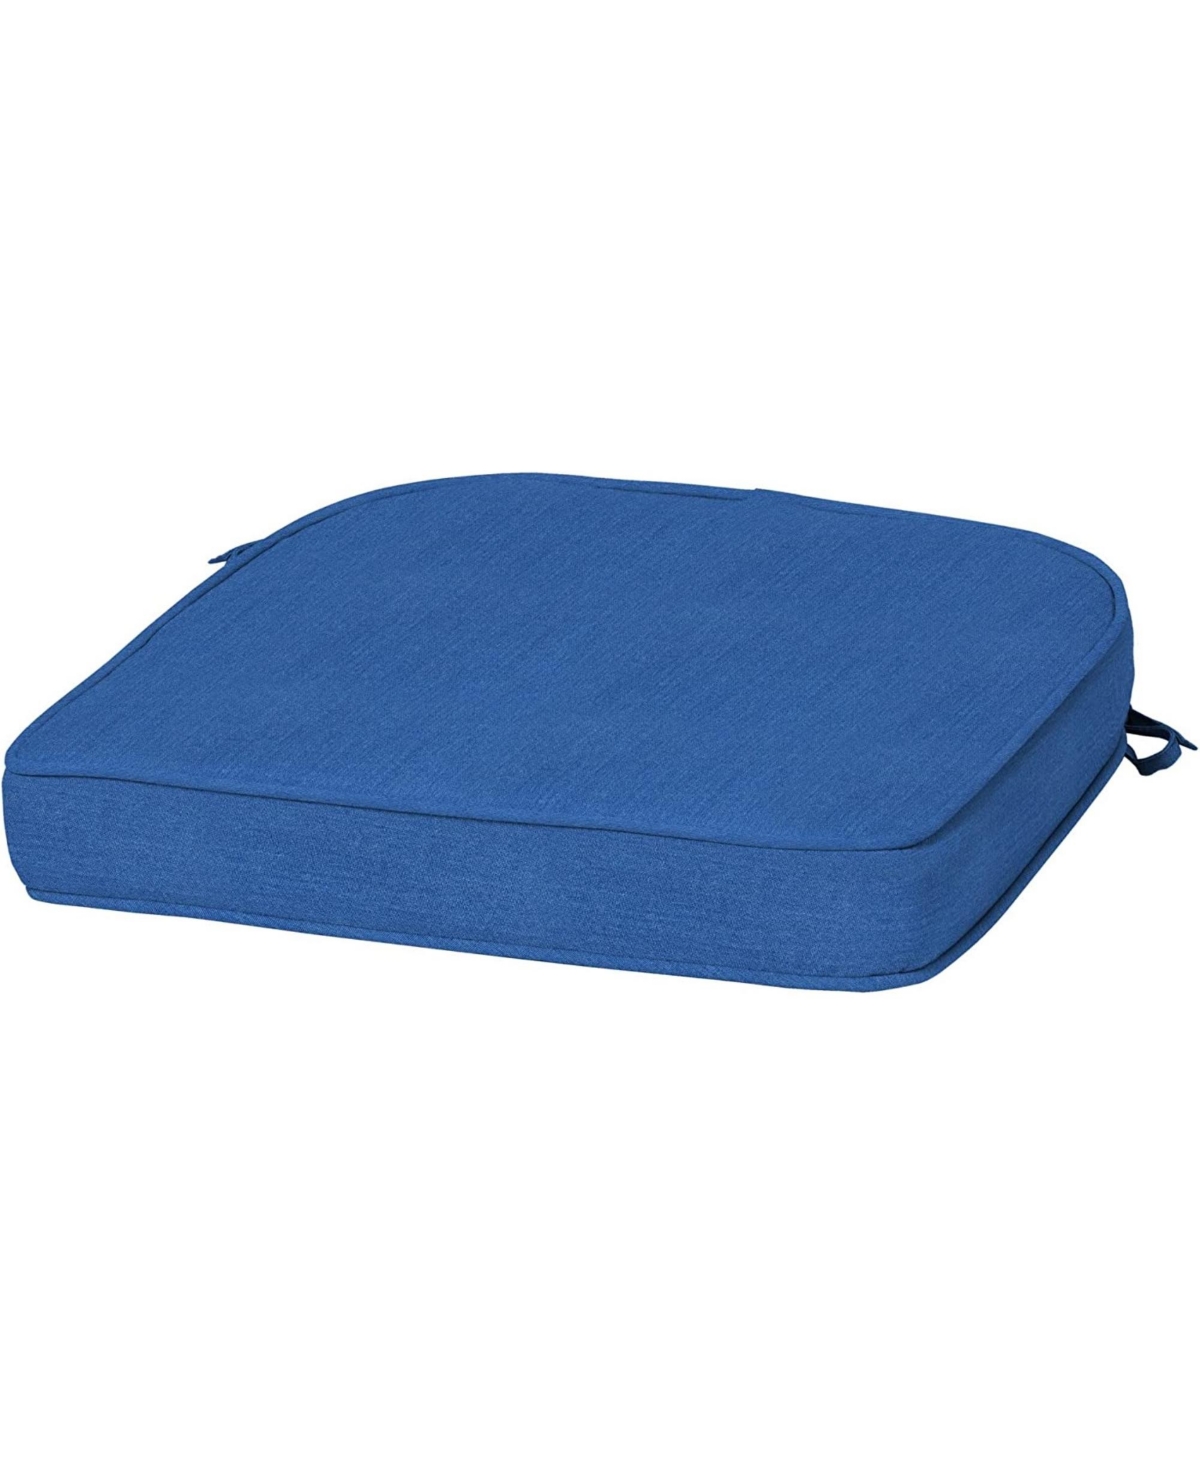 ProFoam EverTru Rounded Back Patio Cushion Blue - Blue